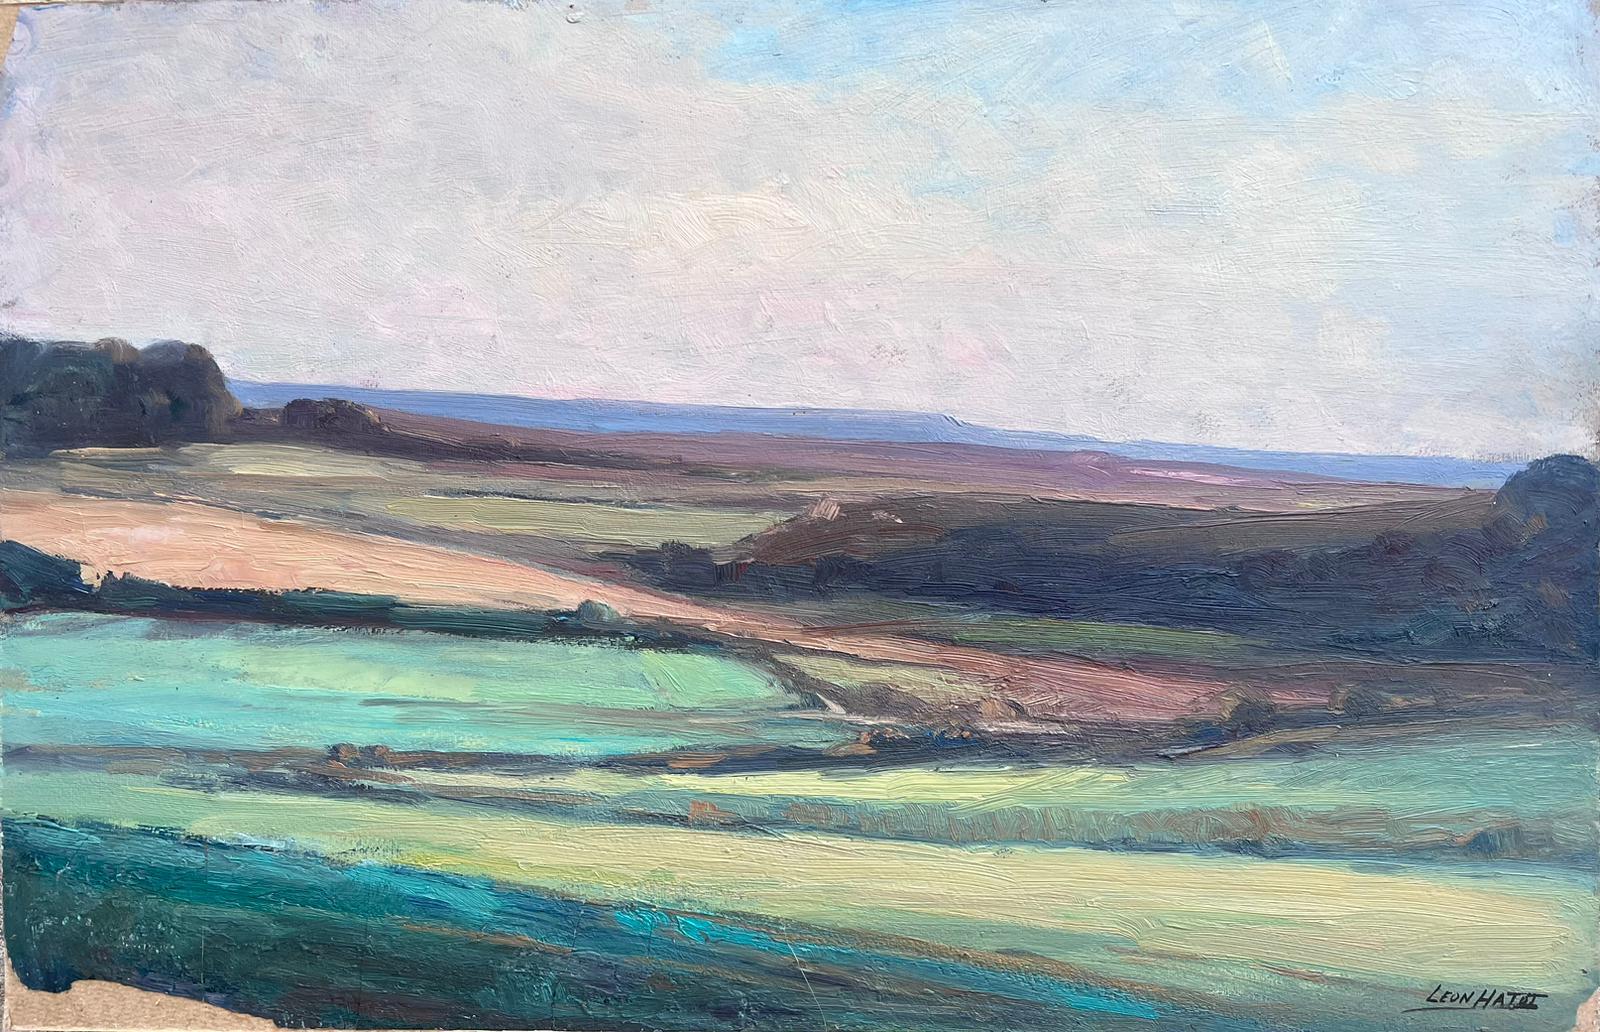 Landscape Painting Leon Hatot - Peinture à l'huile française d'époque, paysage de colline en couches vertes et brunes